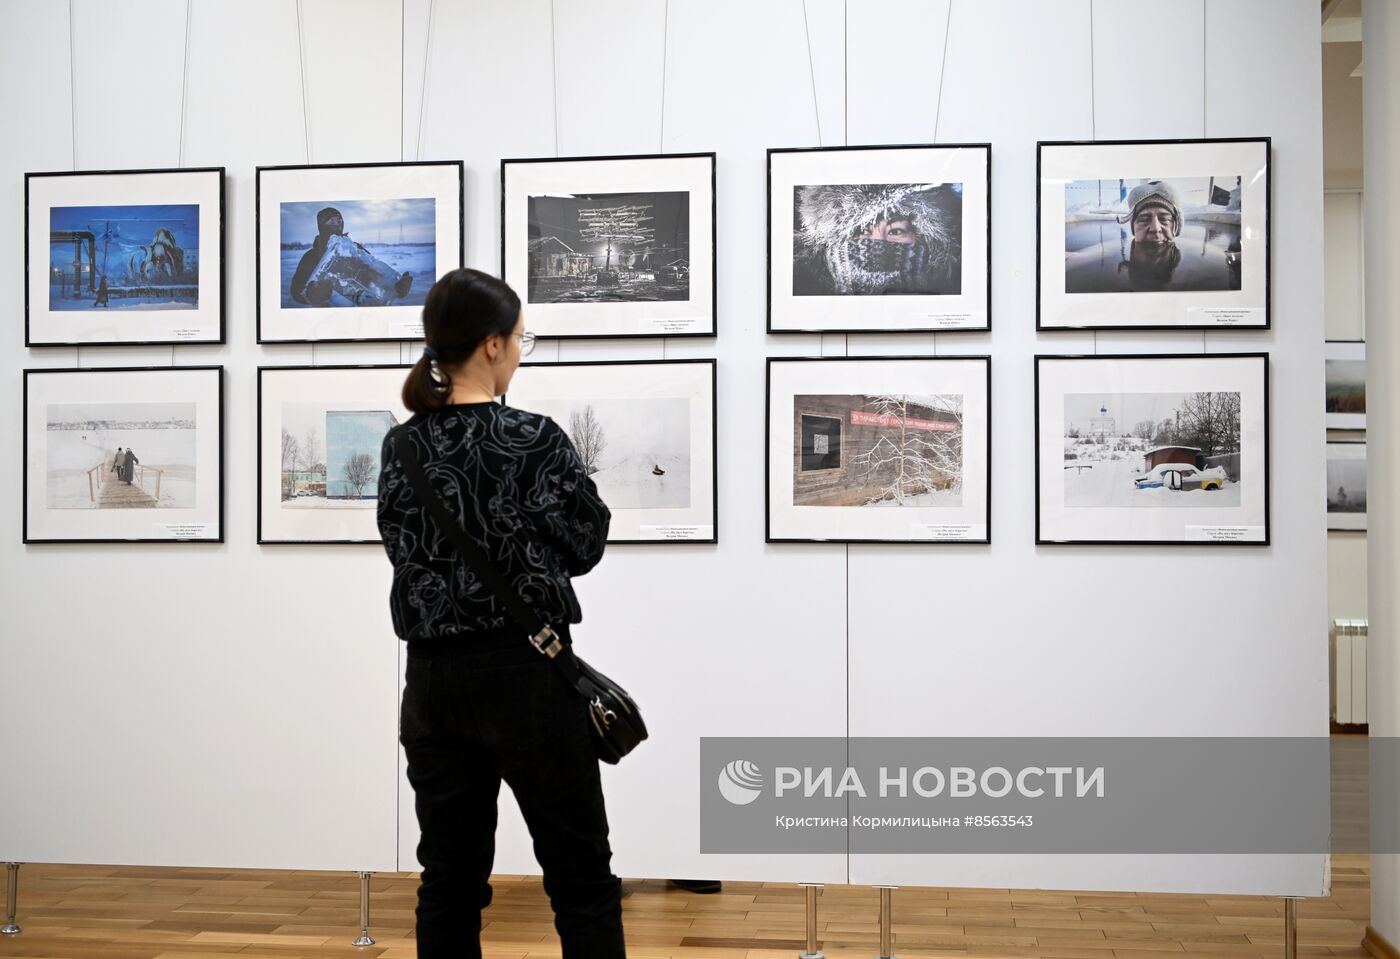 Фотографы МИА "Россия сегодня" завоевали награды конкурса "Самарский взгляд"